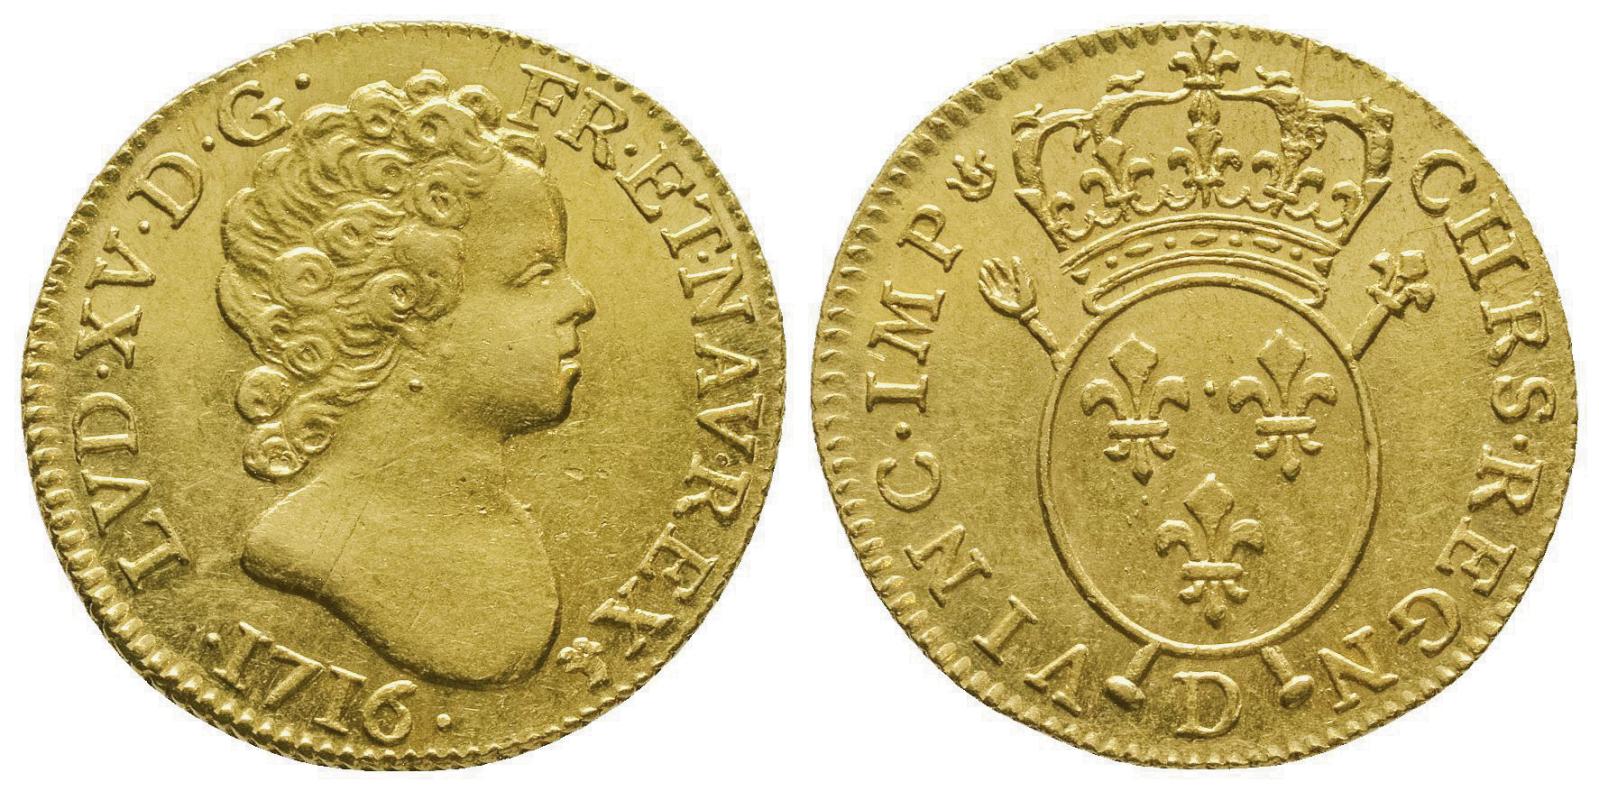 Lyon, 1716. Louis d’or aux insignes du 1er type (date sous le buste) à l’effigie de Louis XV, 8,11 g. Superbe. Estimation : 15 000 €